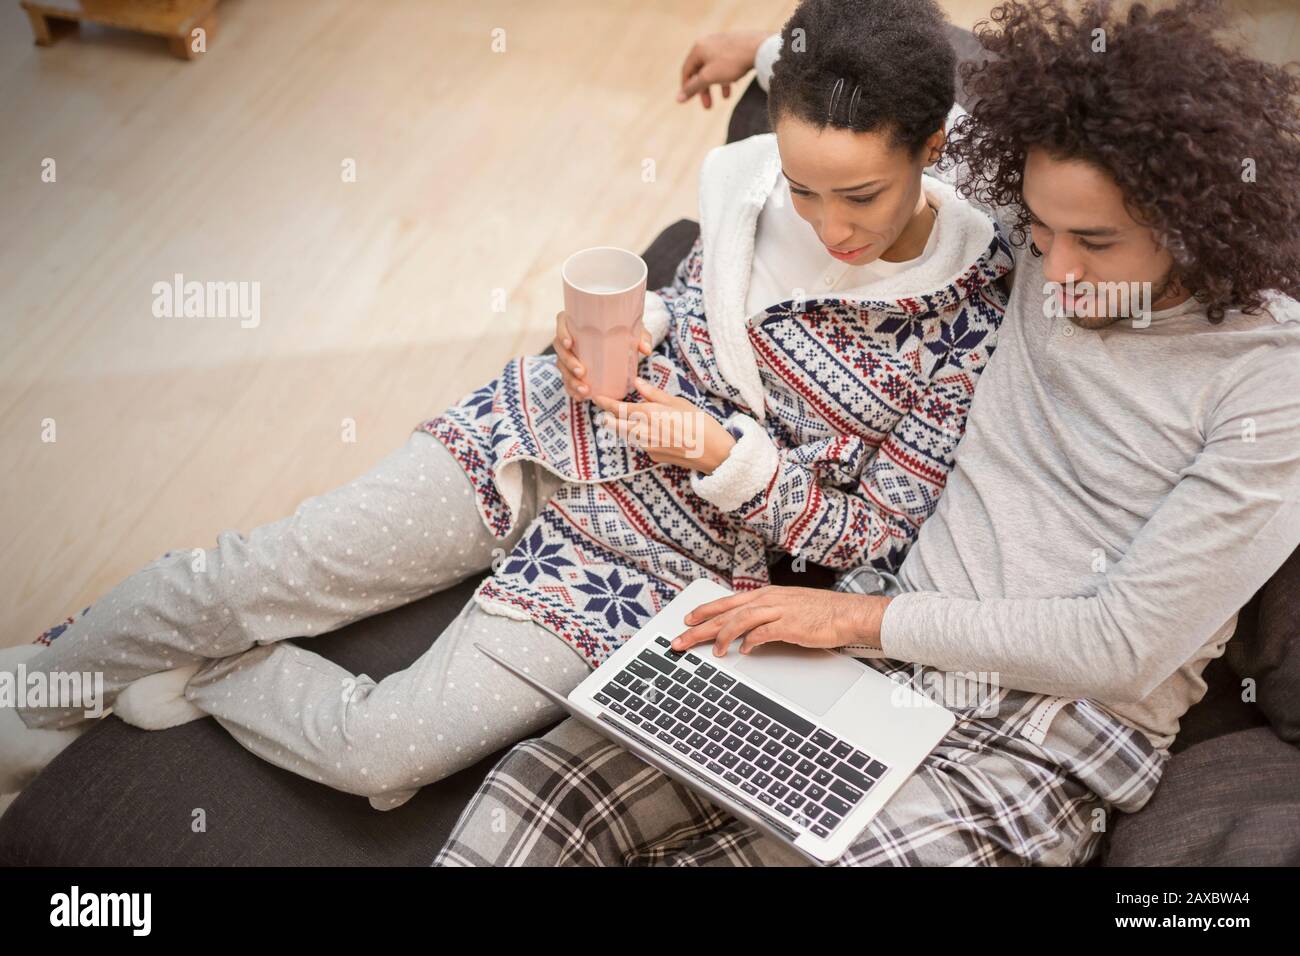 Couple affectueux dans un pyjama relaxant, utilisant un ordinateur portable sur un canapé Banque D'Images